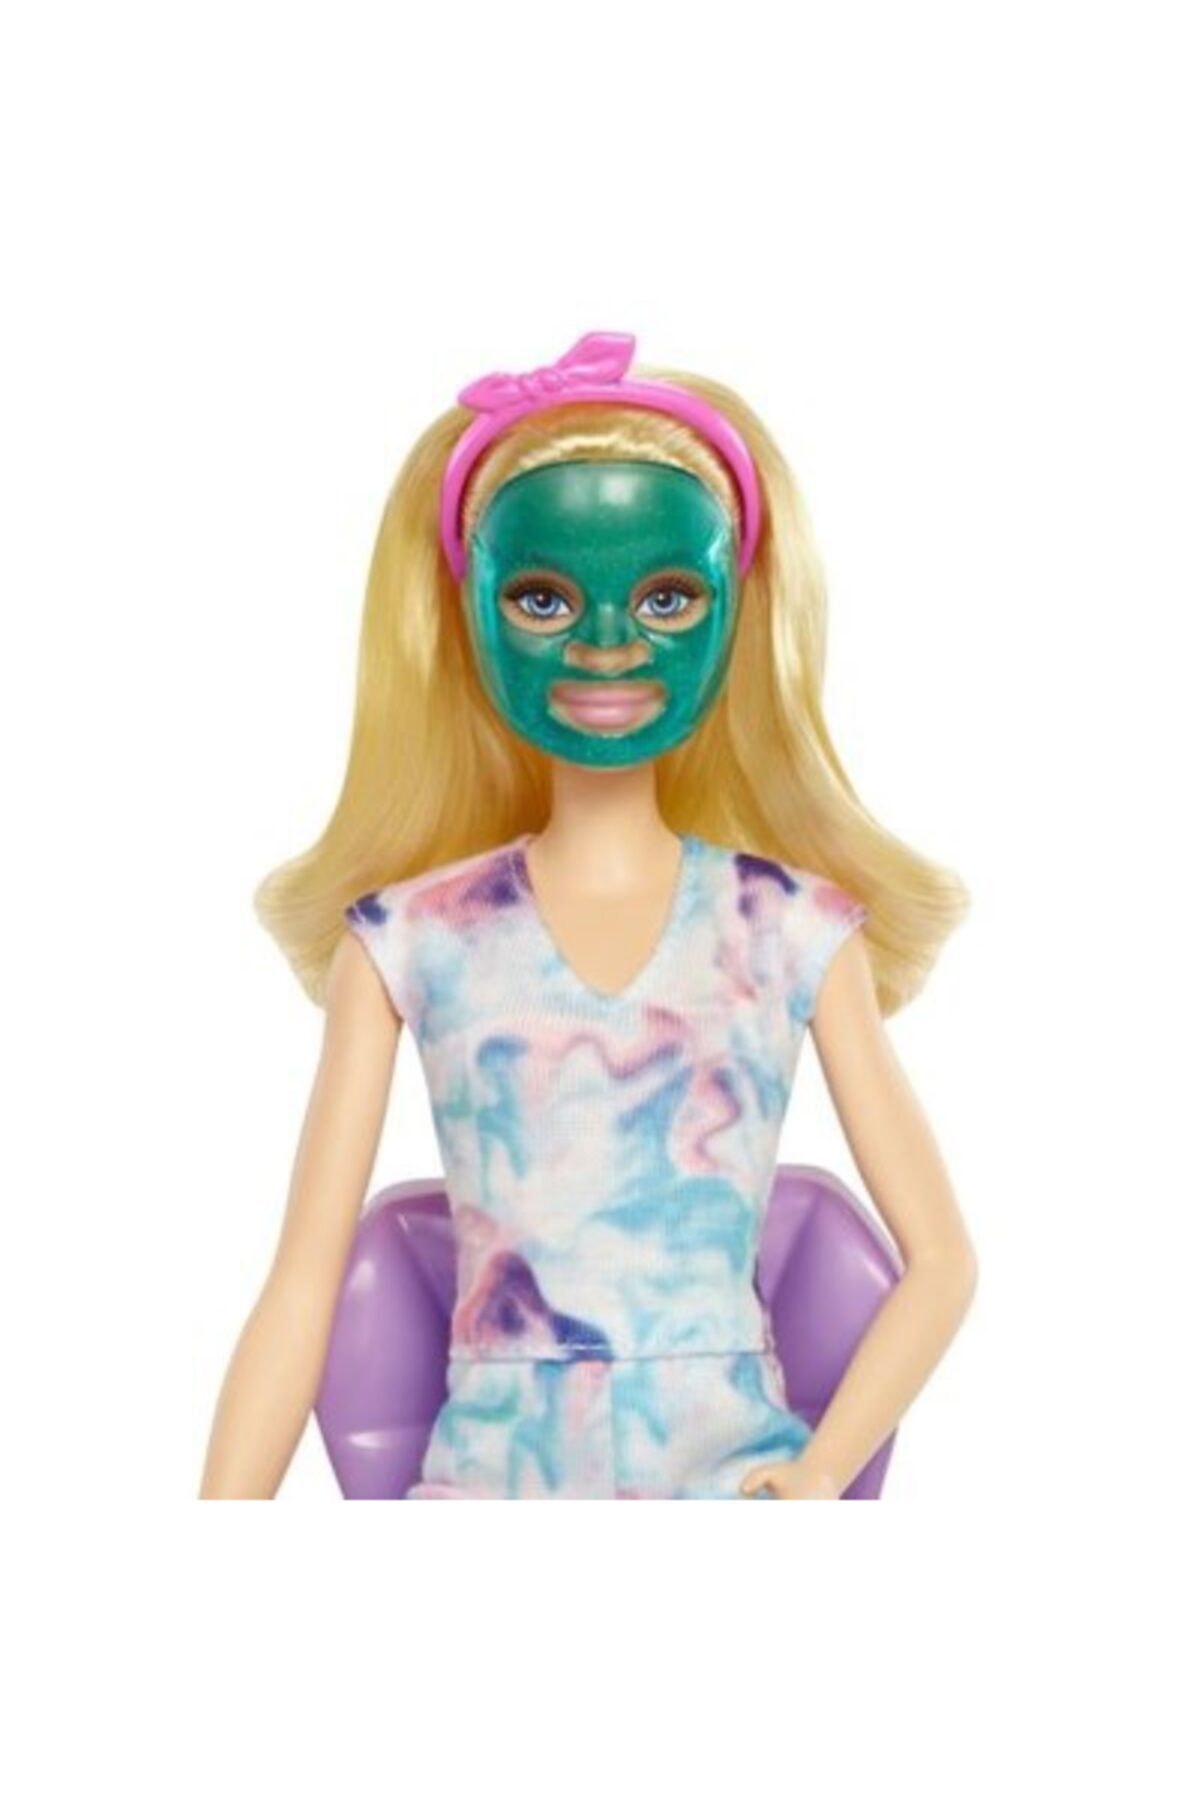 Barbie Işıltı Dolu Spa Günü Oyun Seti